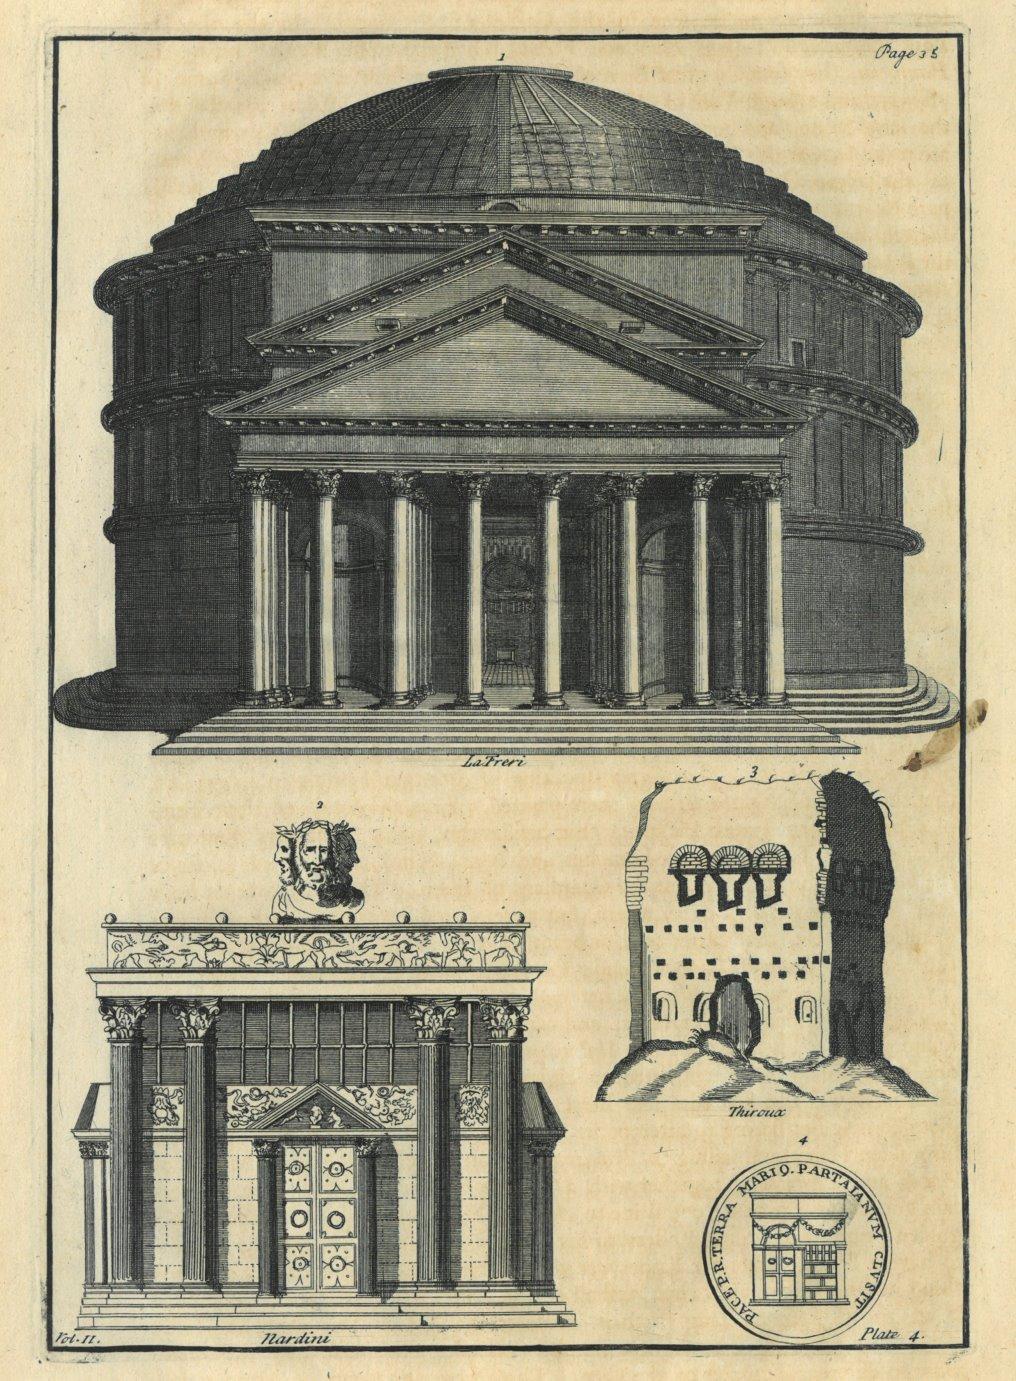 ARCHITEKTUR. - Pantheon. Vorderansicht des Pantheon in der ...